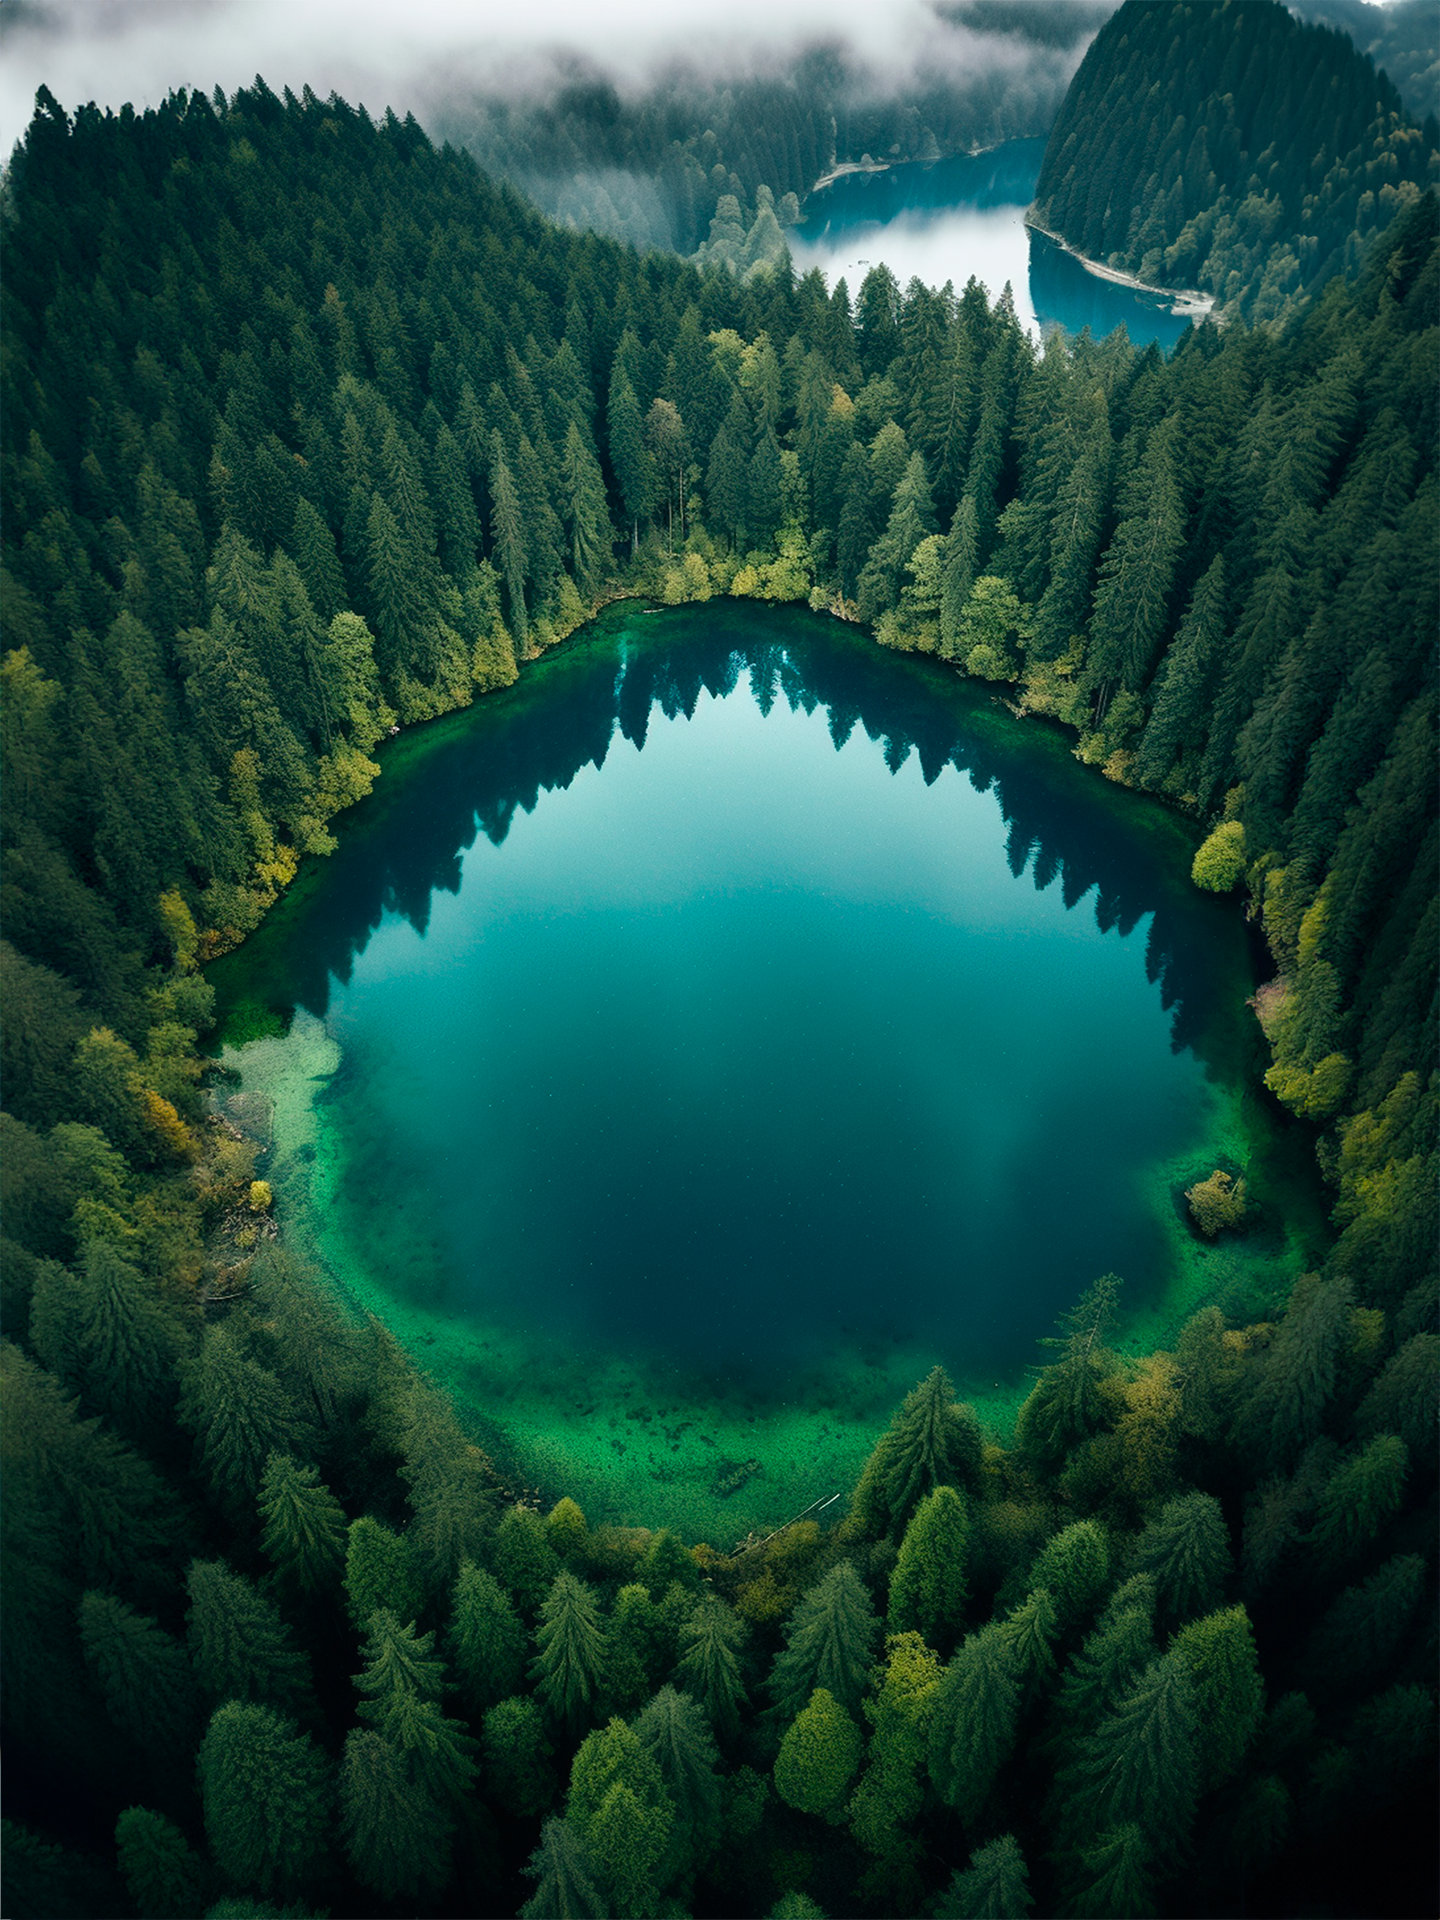 magnifique photographie aérienne d'un lac turquoise en forme de cercle, entouré d'une dense forêt d'arbres verts. Les eaux calmes du lac reflètent les arbres et le ciel, créant un miroir naturel